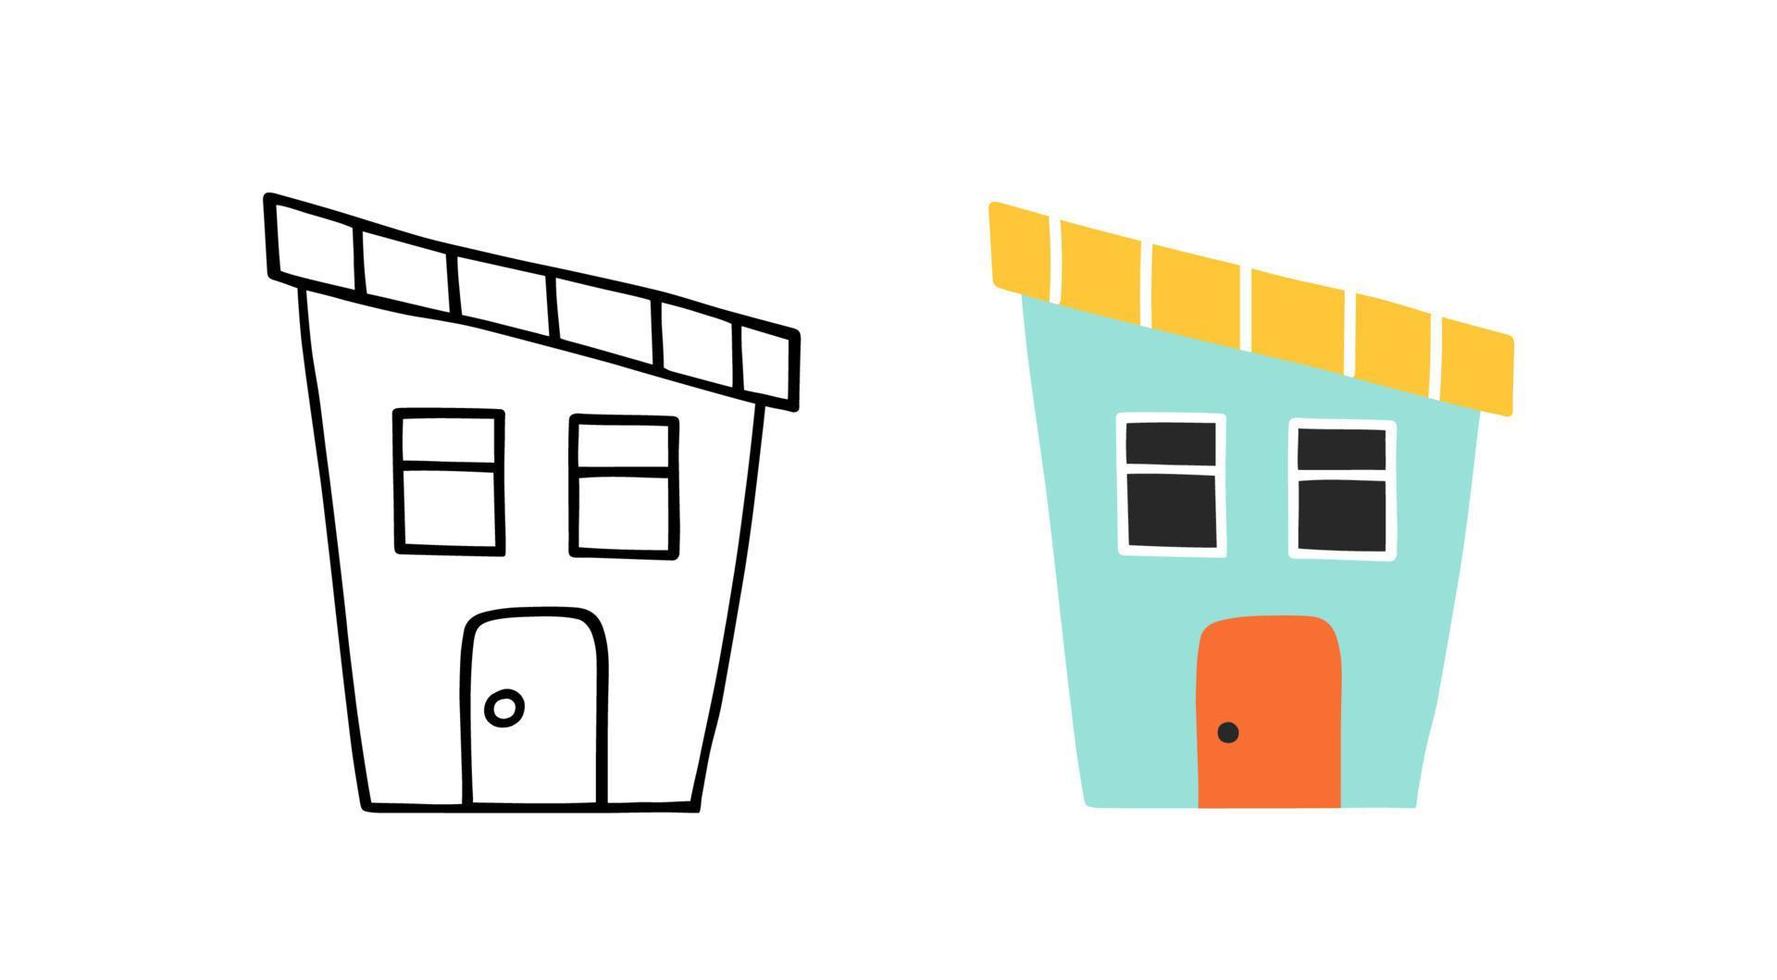 casa de dibujos animados en estilo dibujado a mano. niños dibujando casa. ilustración plana vector